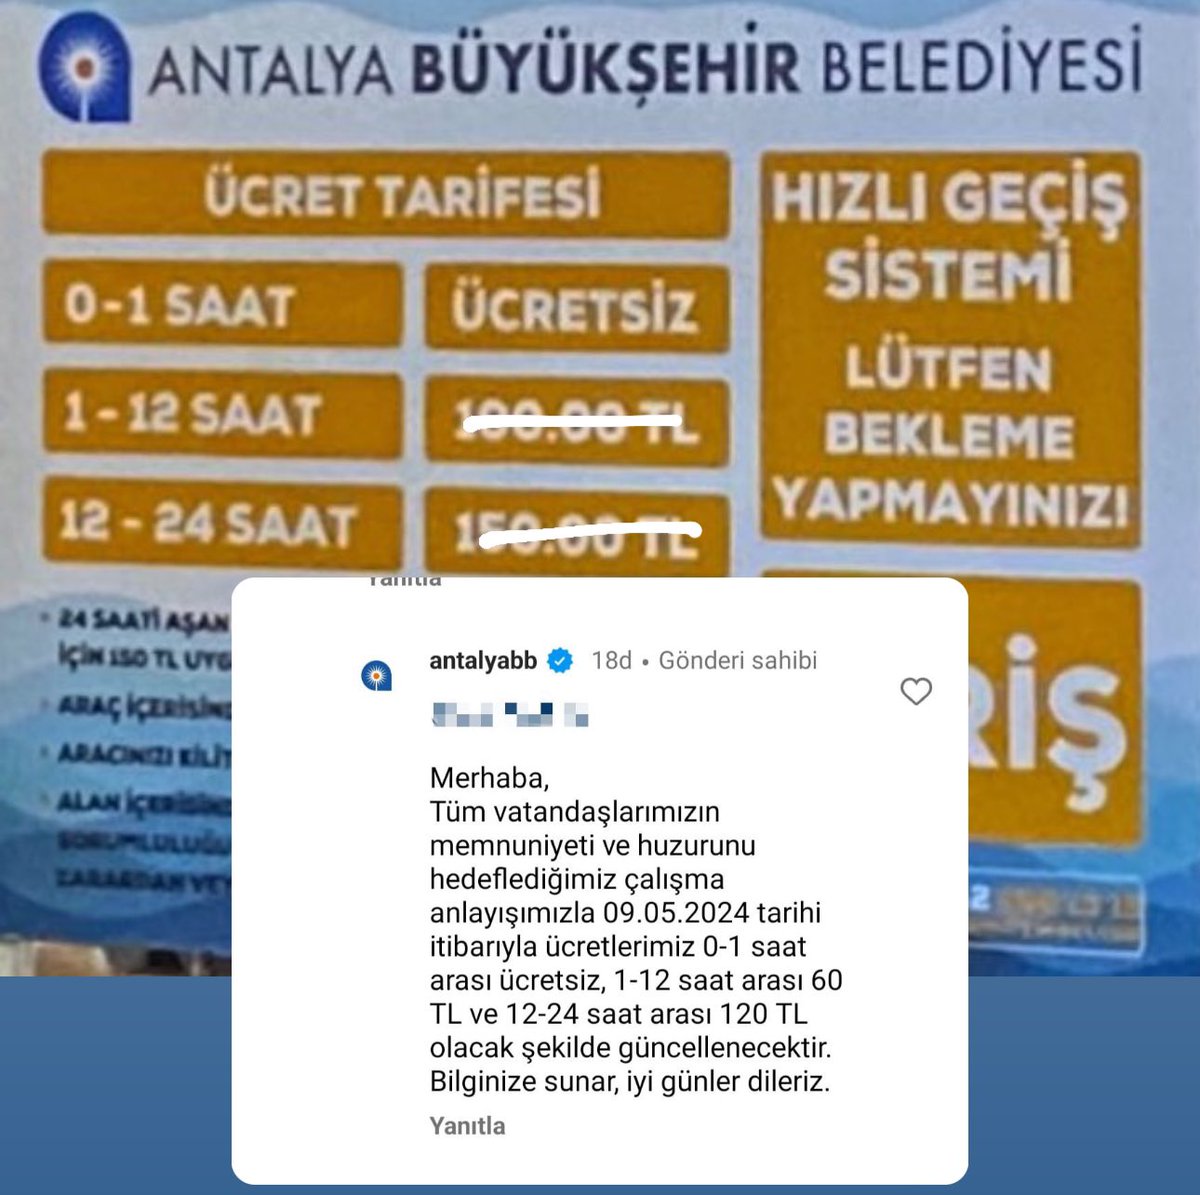 Antalya Büyükşehir Belediyesi yaptığı zammı geri çekti! 30₺’den 100₺’ye yükselen fiyat 60₺ olarak revize edildi.